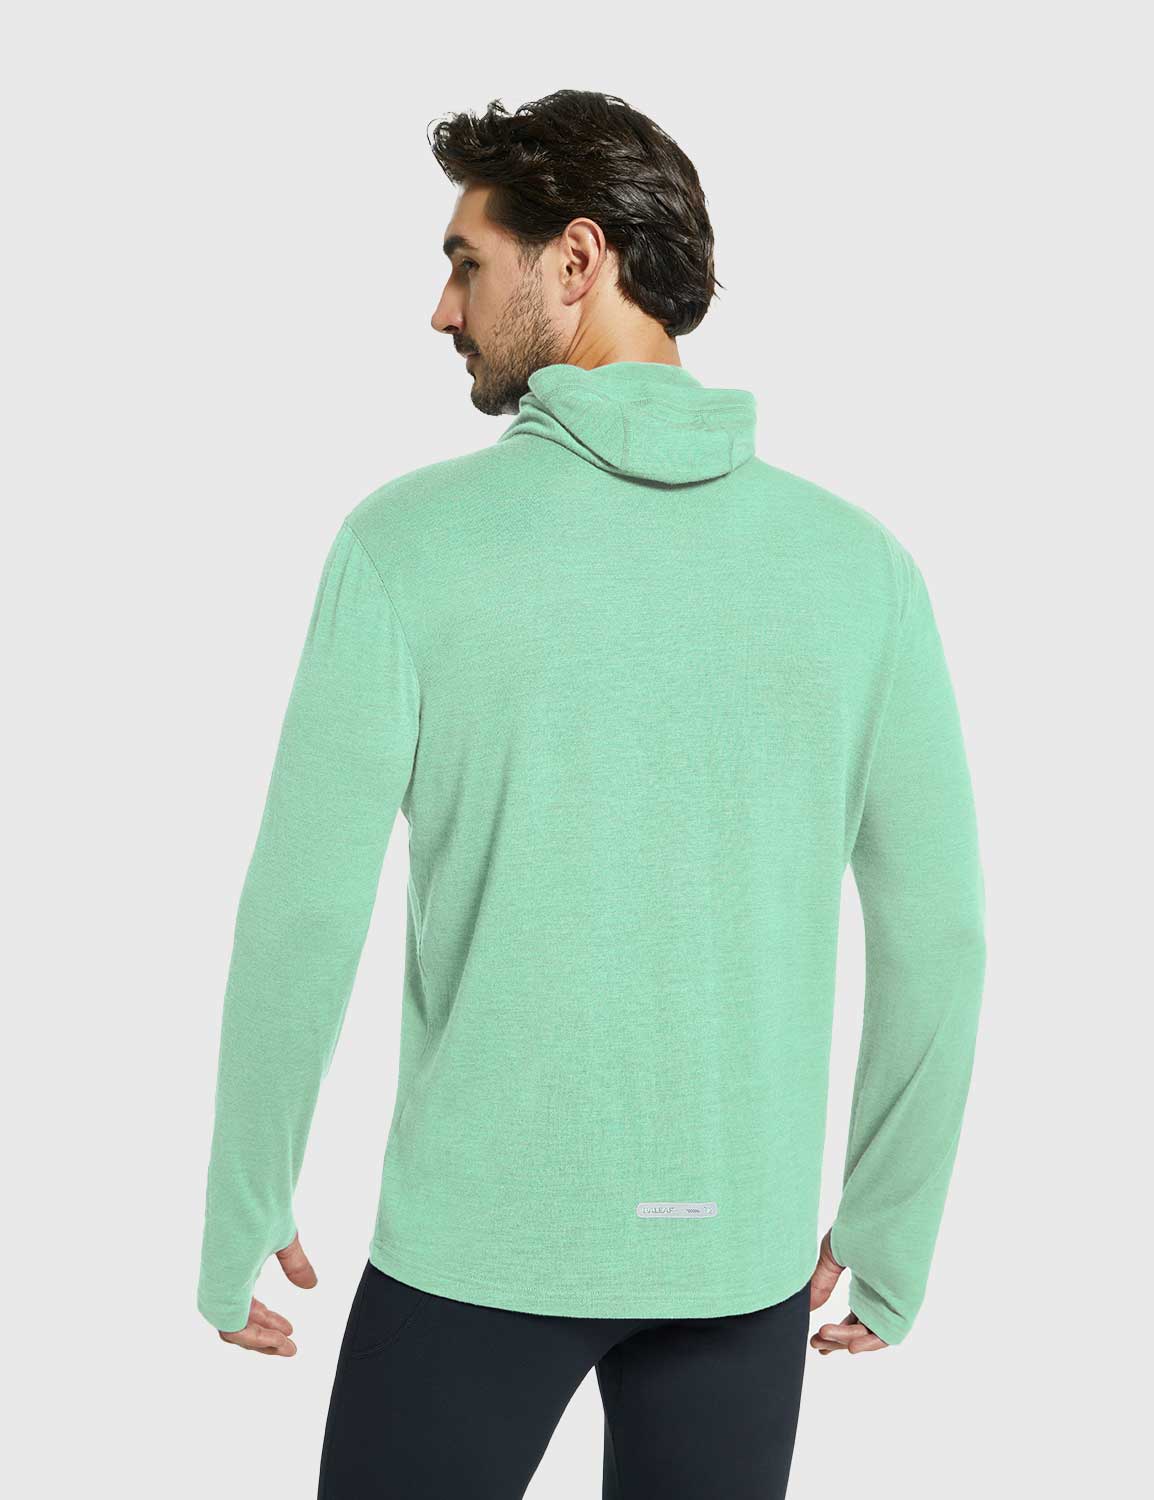 Baleaf Men's Merino Wool Hooded Base Layer Shirts Jade green Back